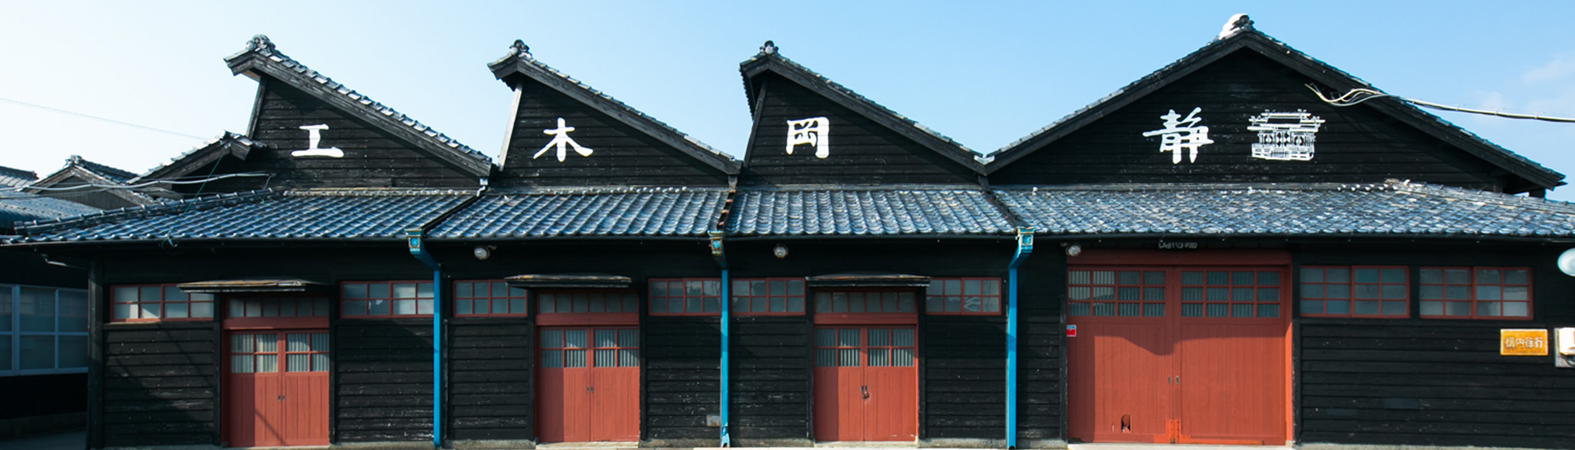 Shizuoka Carpintaria (静岡木工): Conexão com a Espiritualidade e a Tradição Japonesa